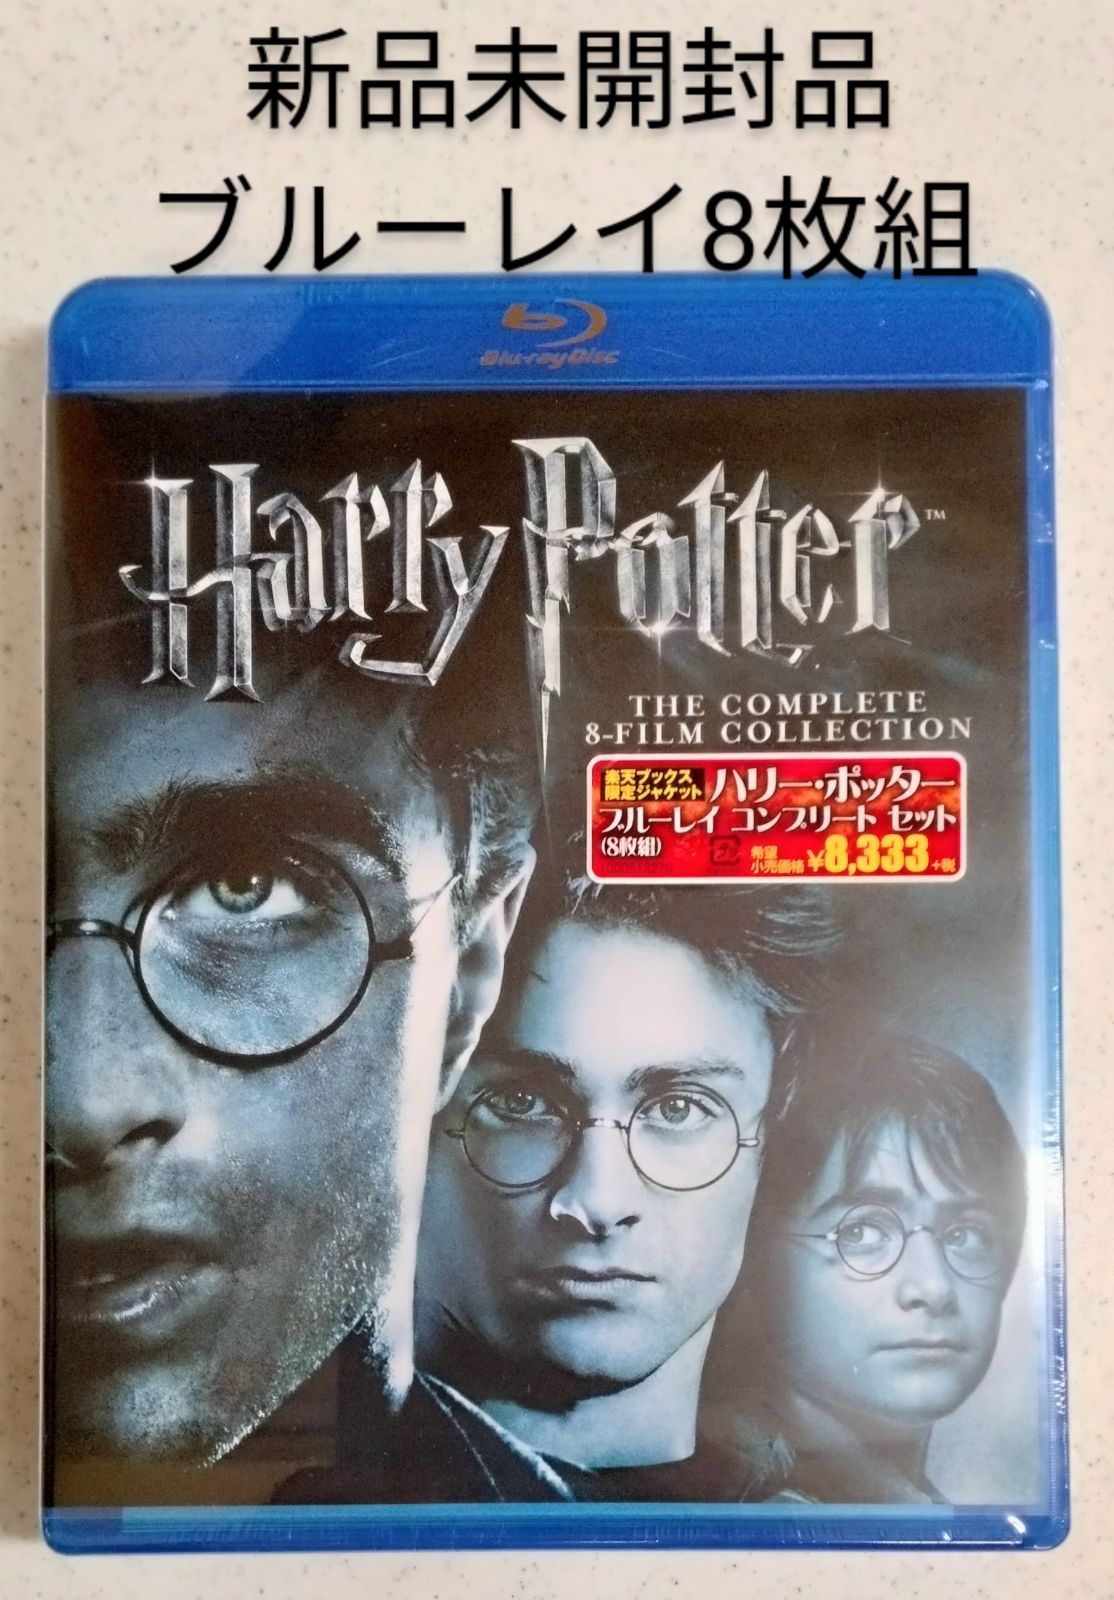 ハリーポッター 映画全作セット Blu-ray - DVD/ブルーレイ